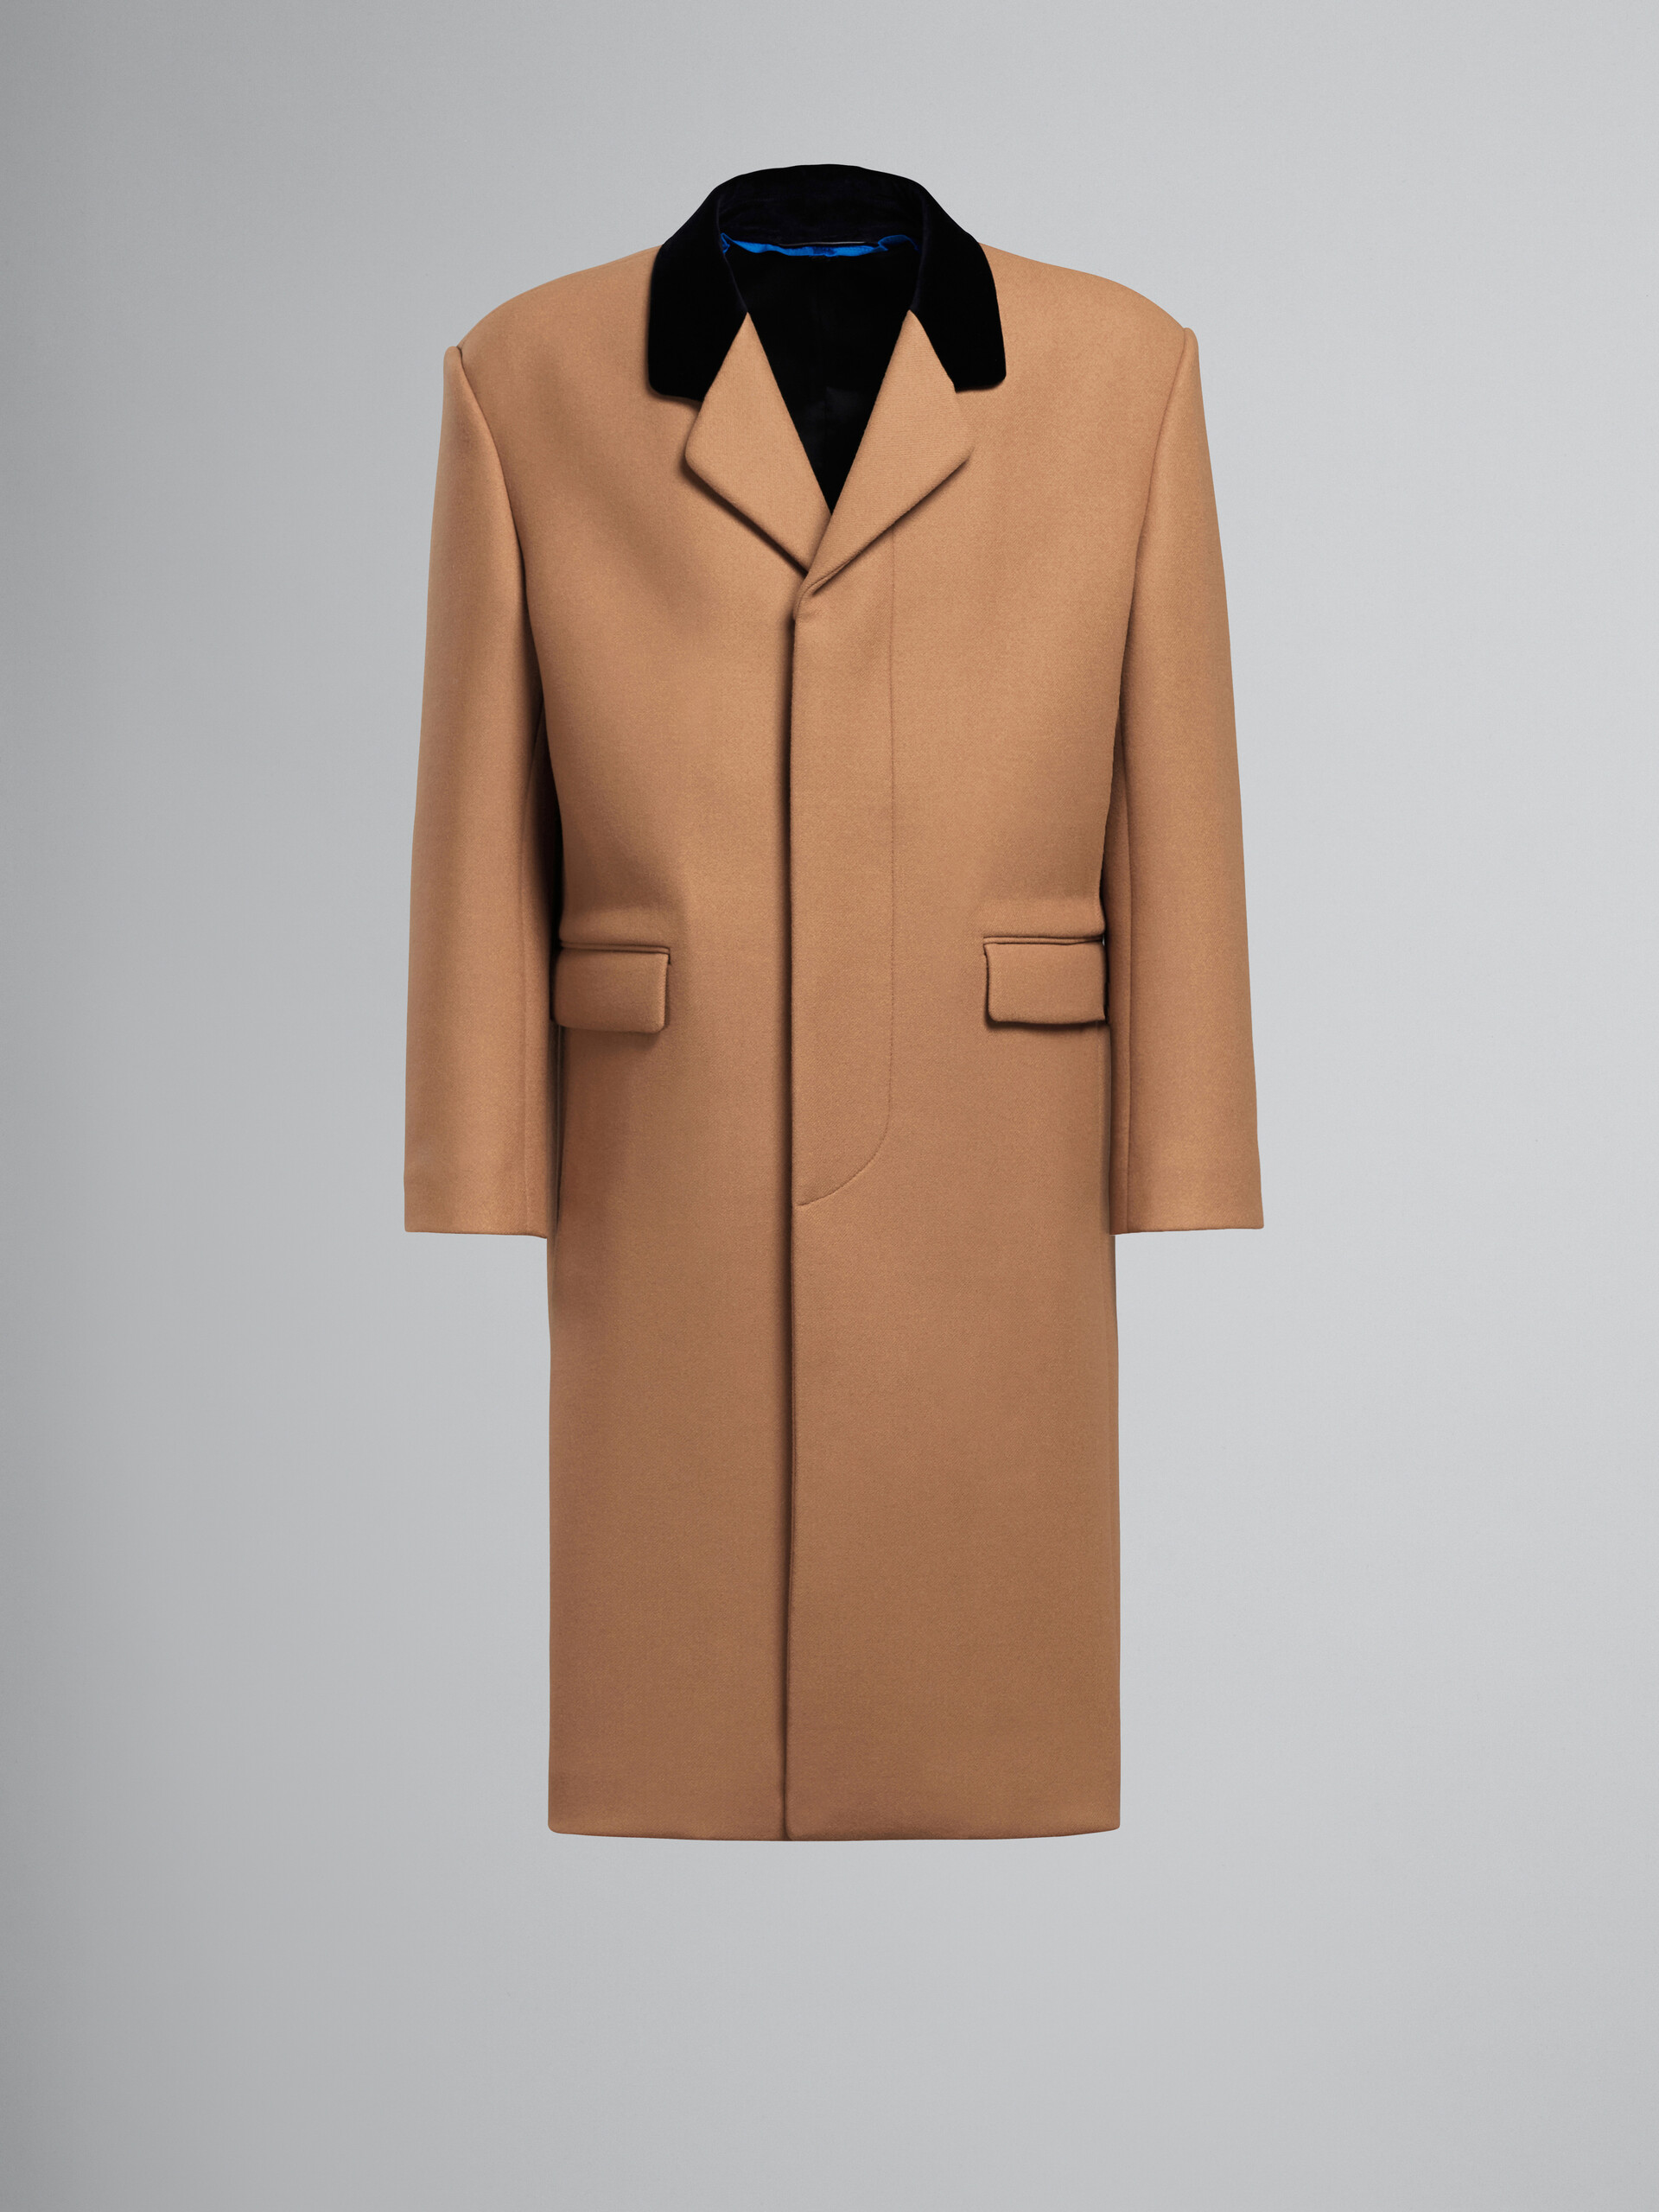 Brauner Mantel aus Wolle mit Samtkragen - Mäntel - Image 1